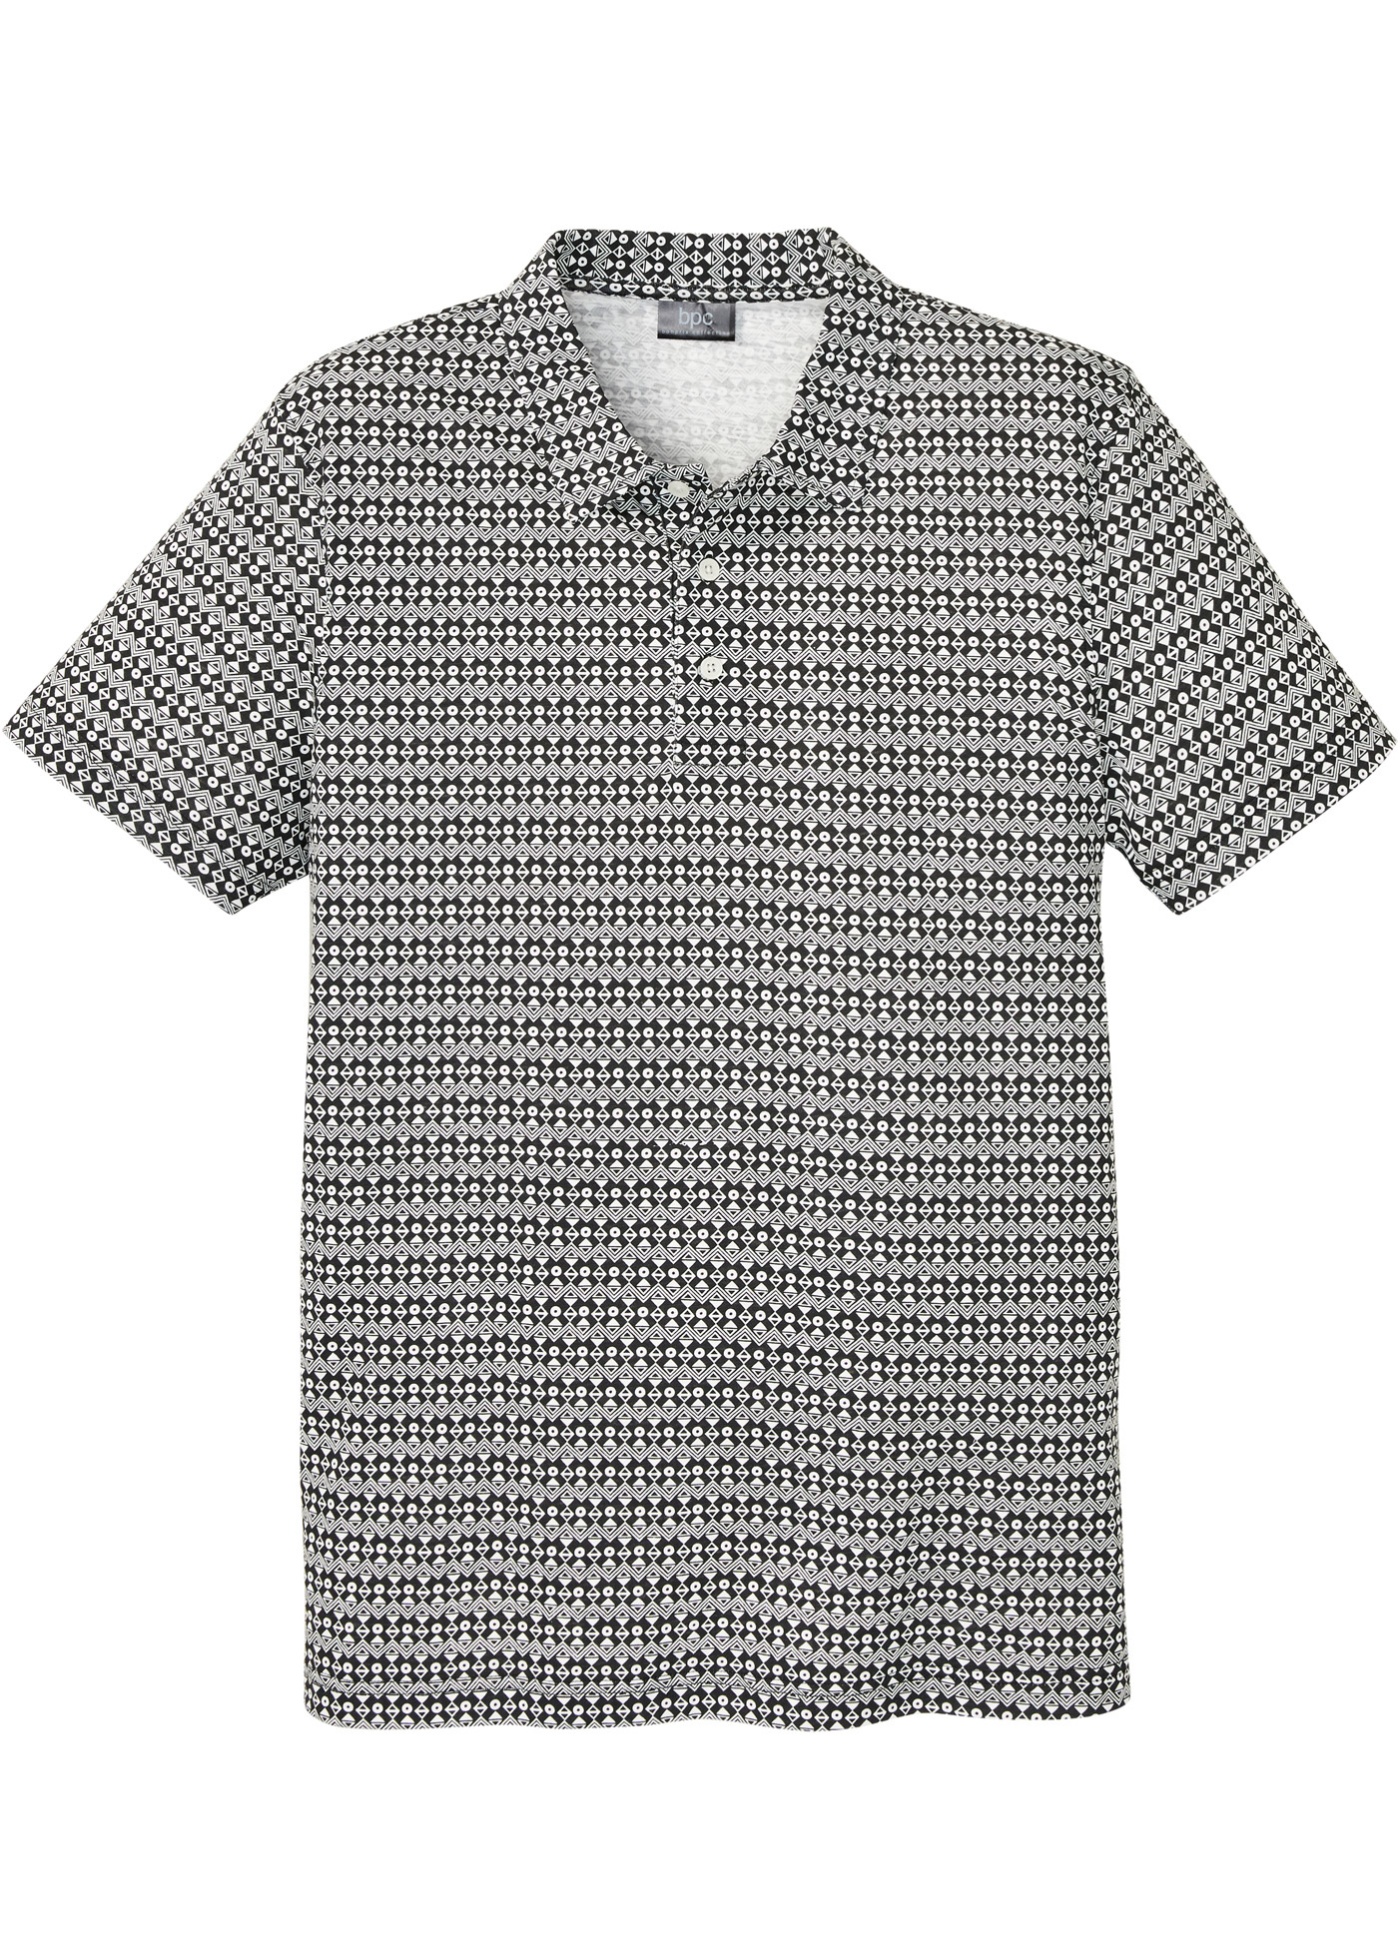 Poloshirt met comfort fit, korte mouwen en minimal print